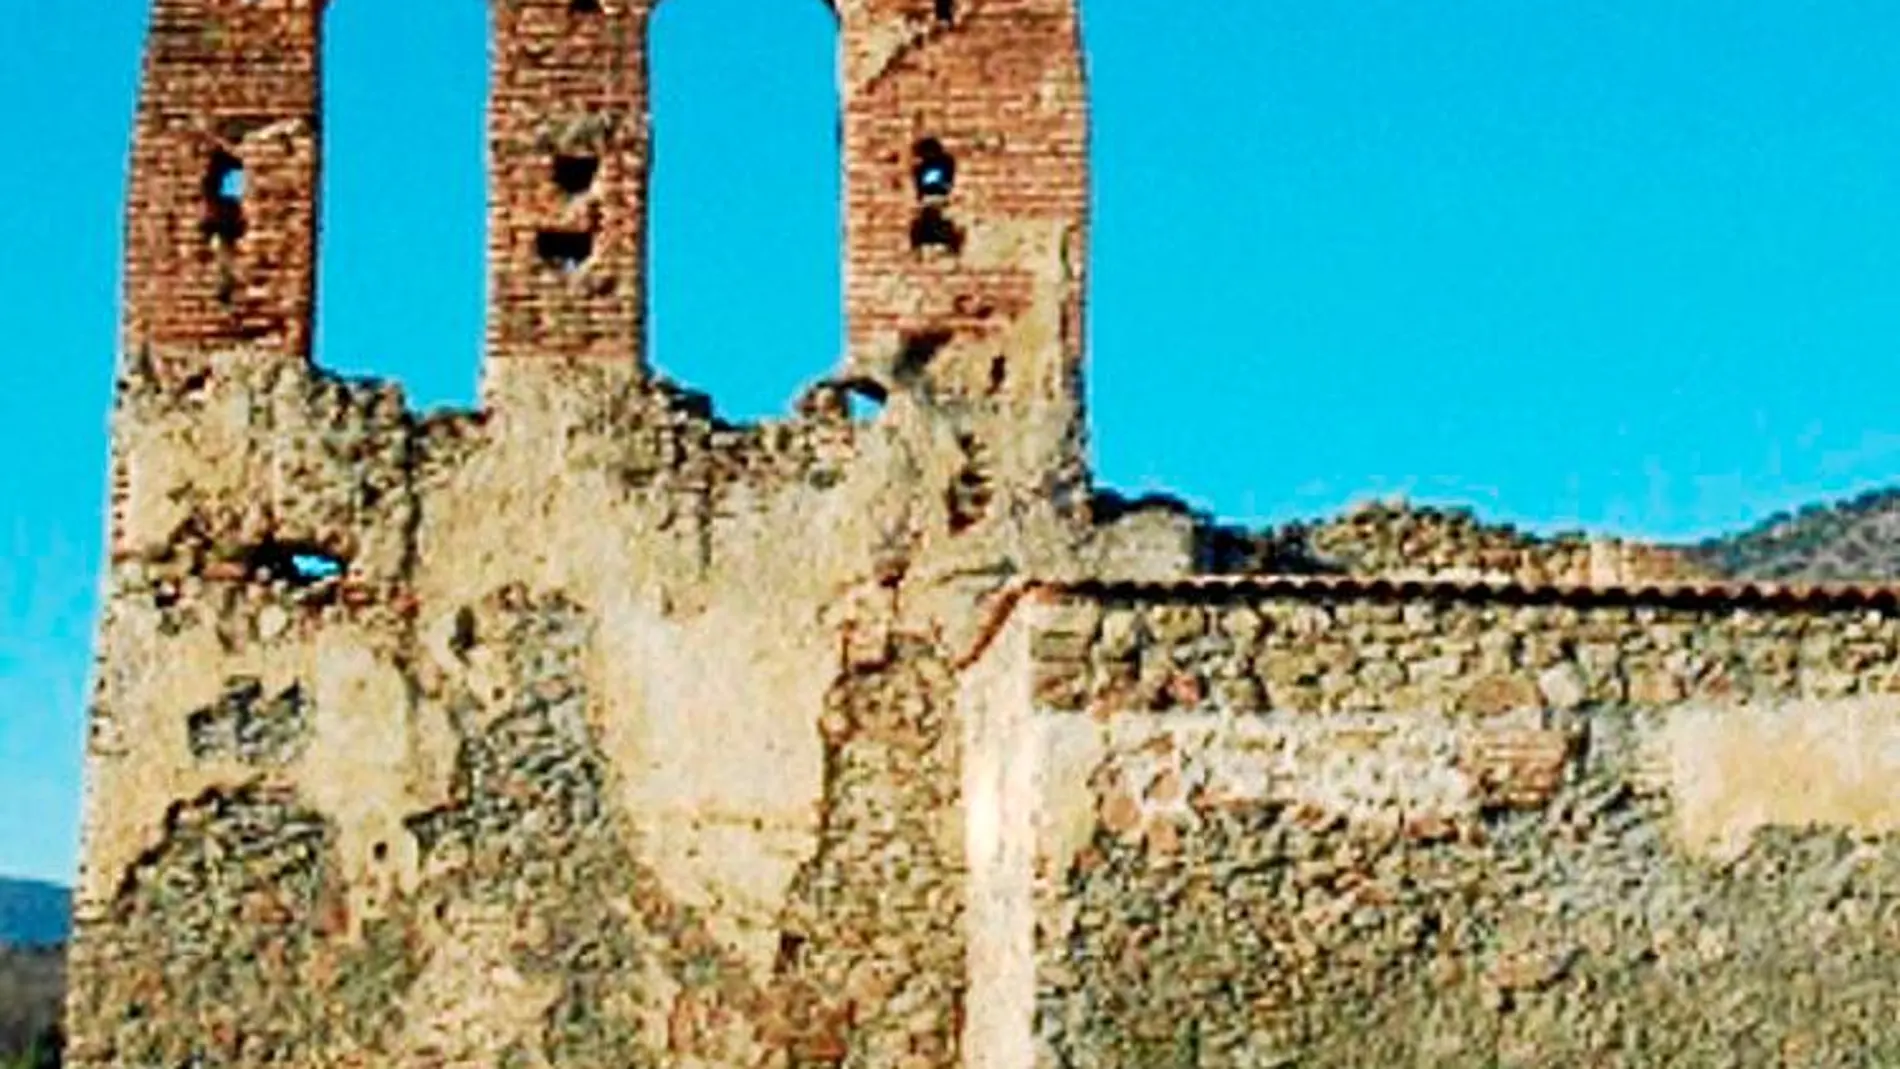 La ermita conserva la espadaña o campanario con dos arcos desiguales construidos en ladrillo